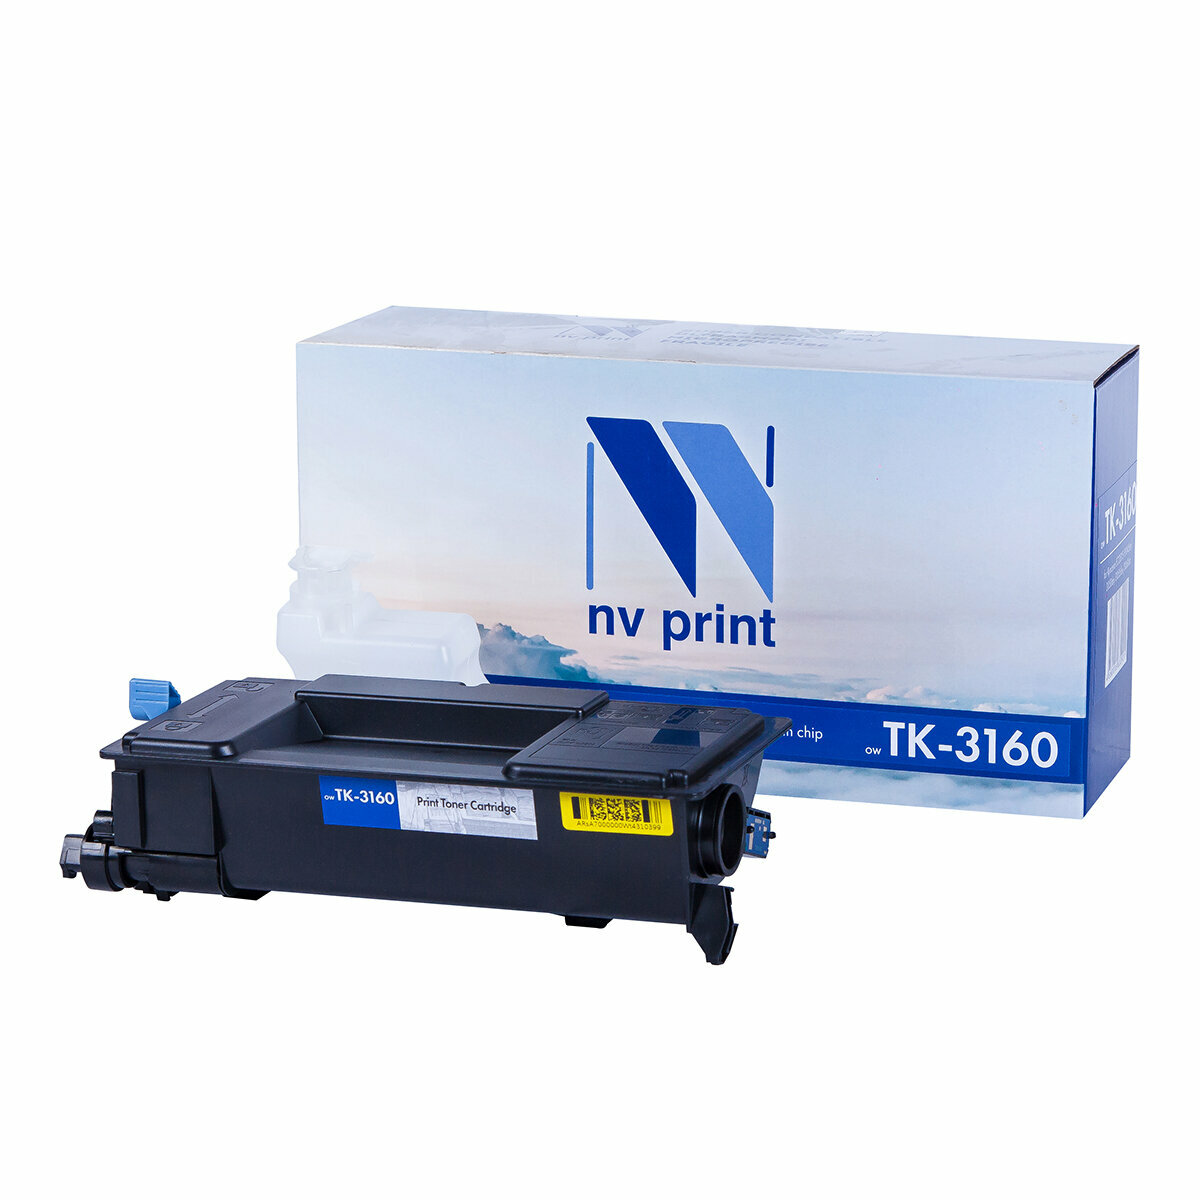 Картридж NV Print TK-3160 для лазерного принтера Kyocera Ecosys P3045dn / P3050dn / P3055dn / P3060dn, совместимый